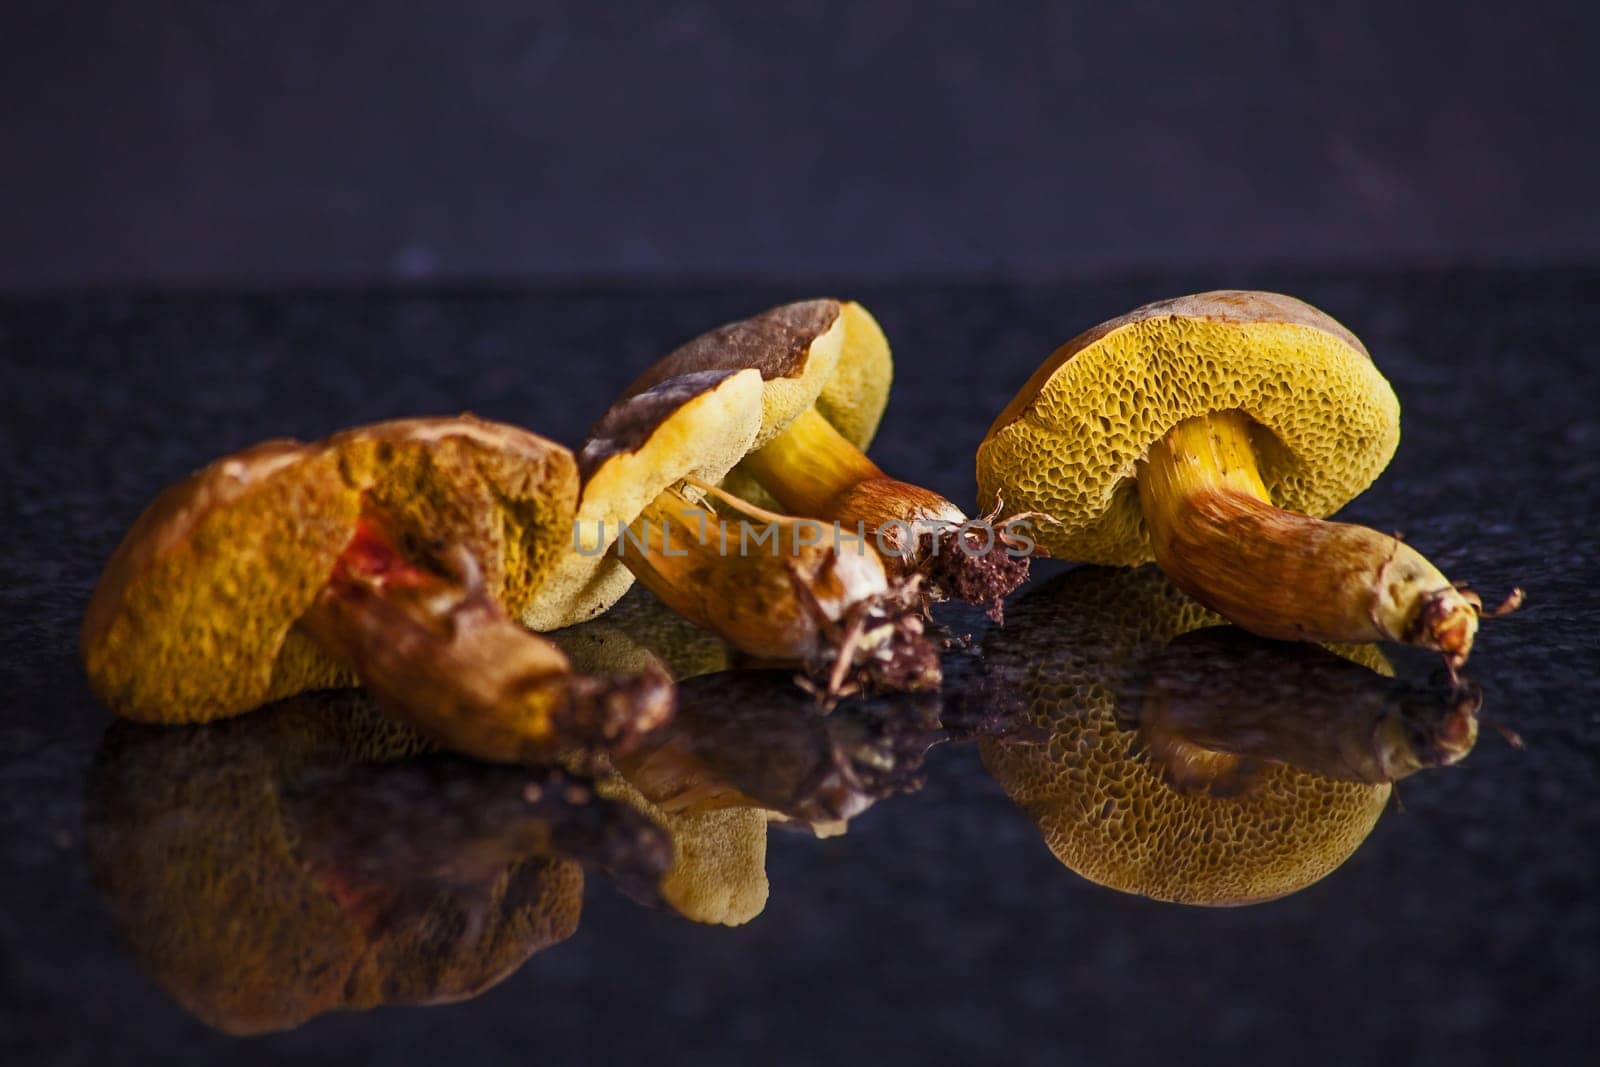 Boletus edulis mushrooms 15356 by kobus_peche